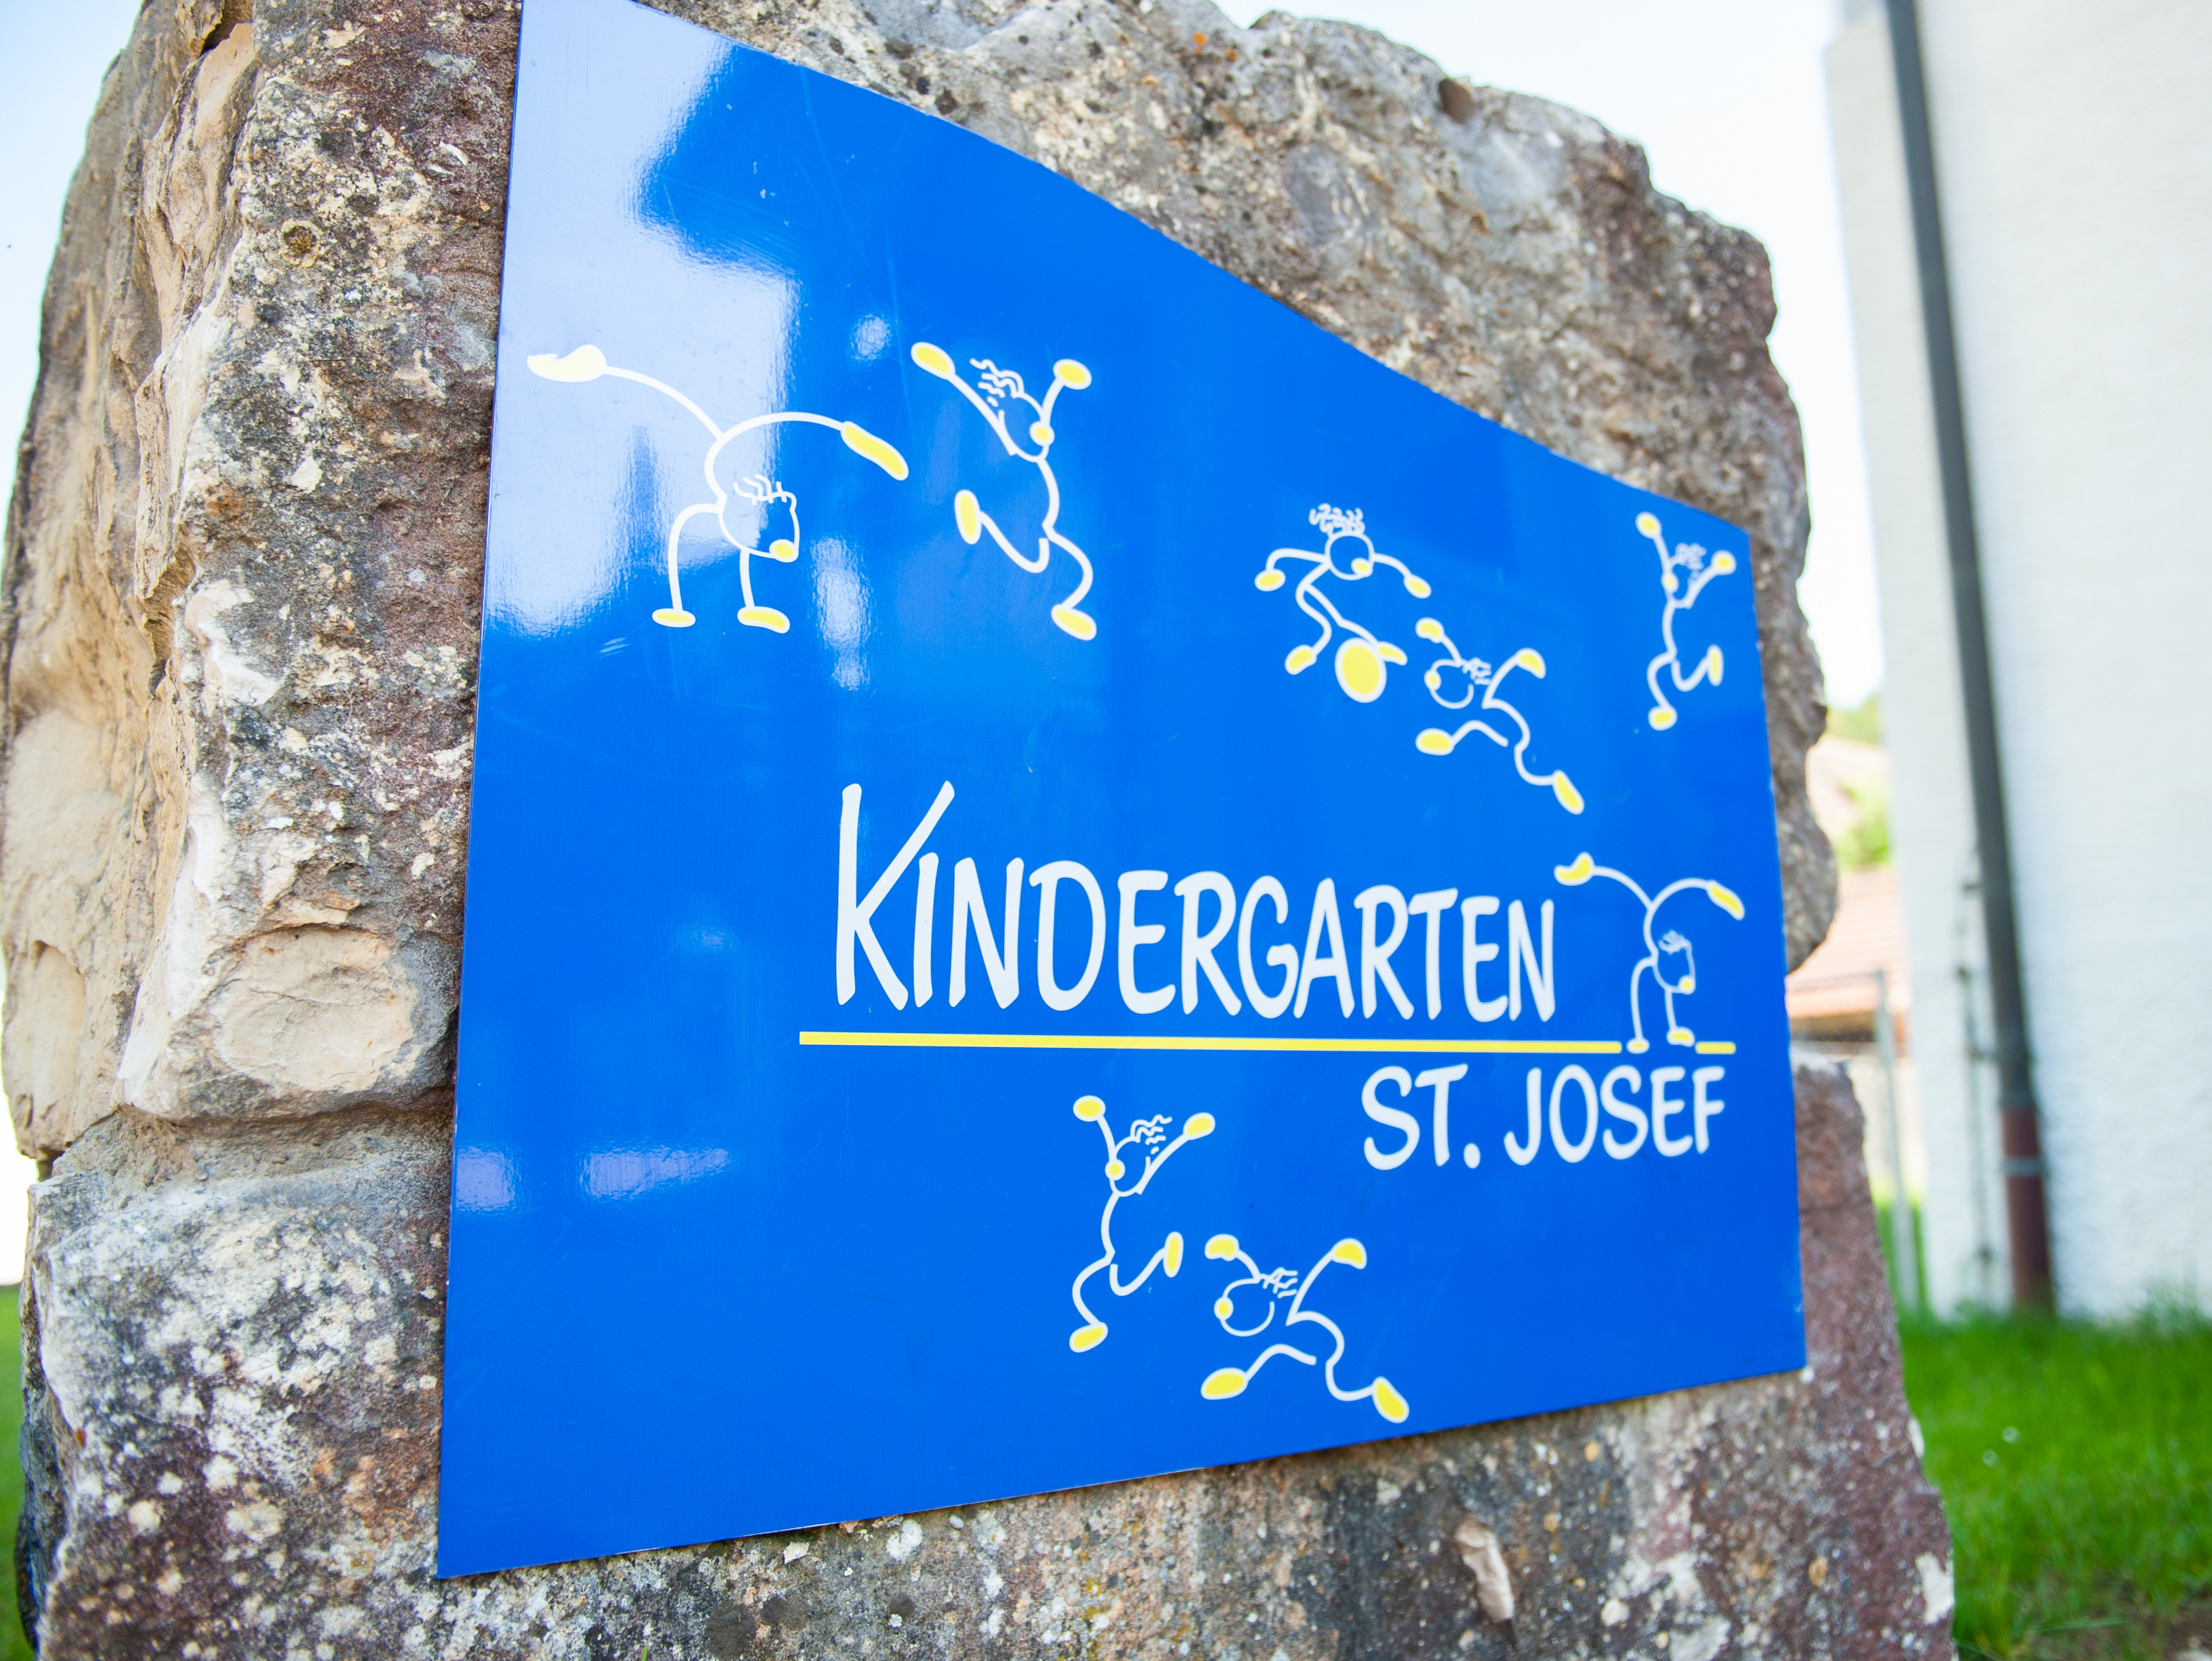                                                     Kindergarten                                    